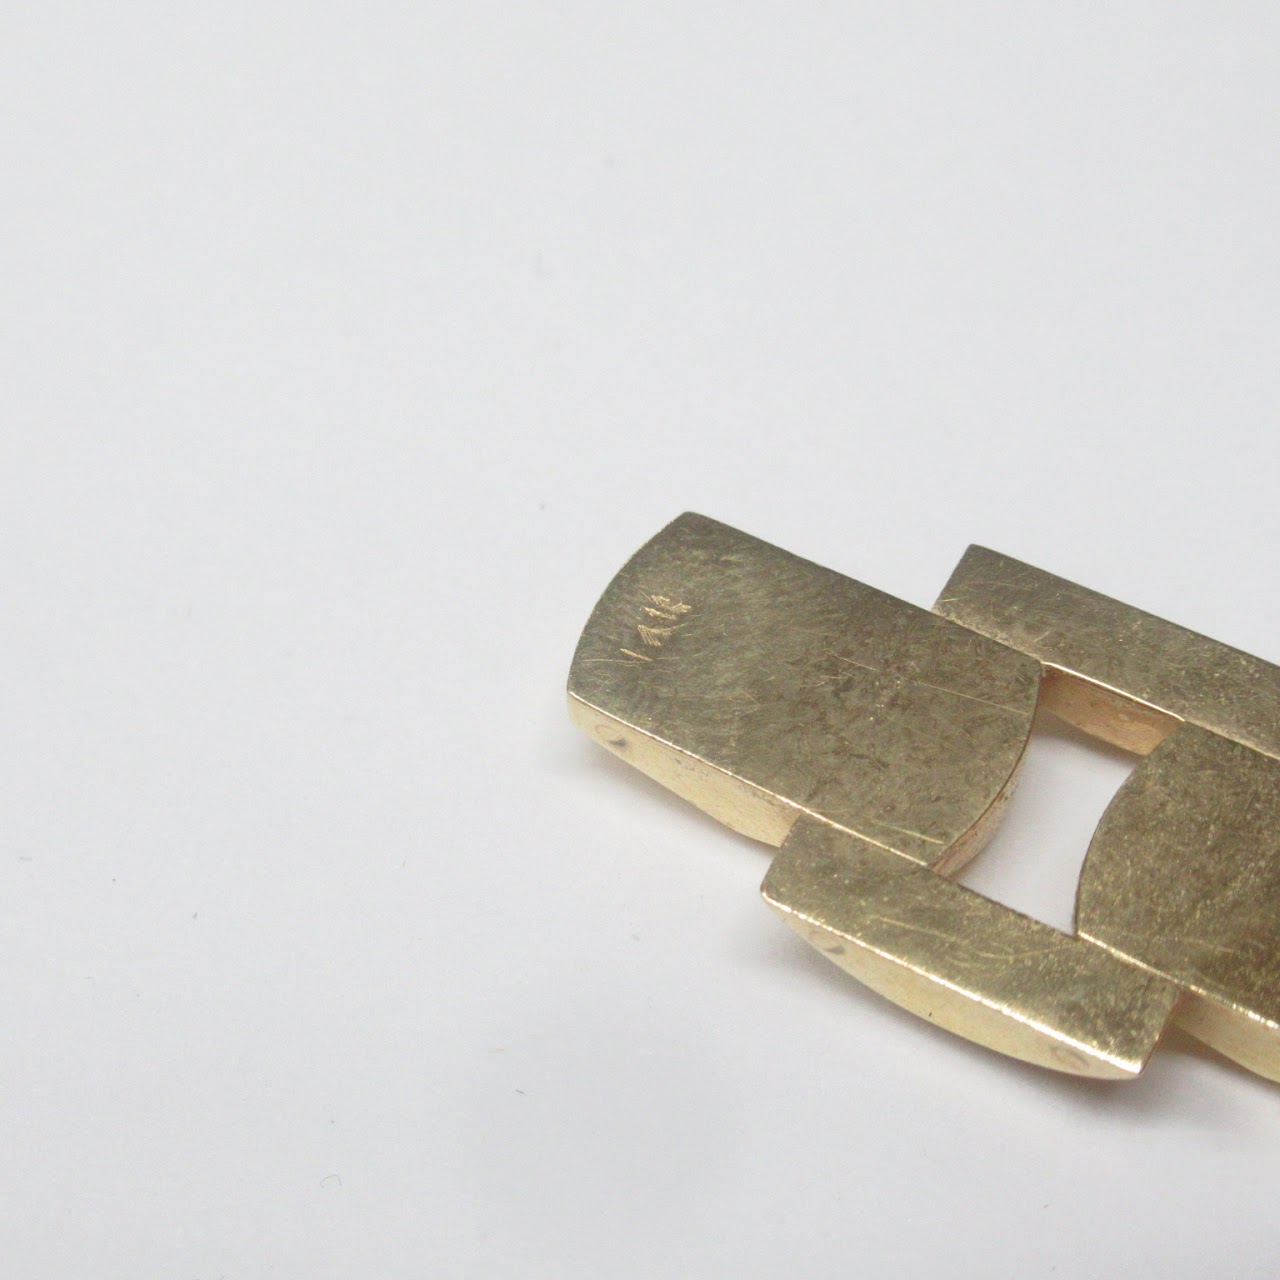 14K Gold Modernist Clip-On Earrings